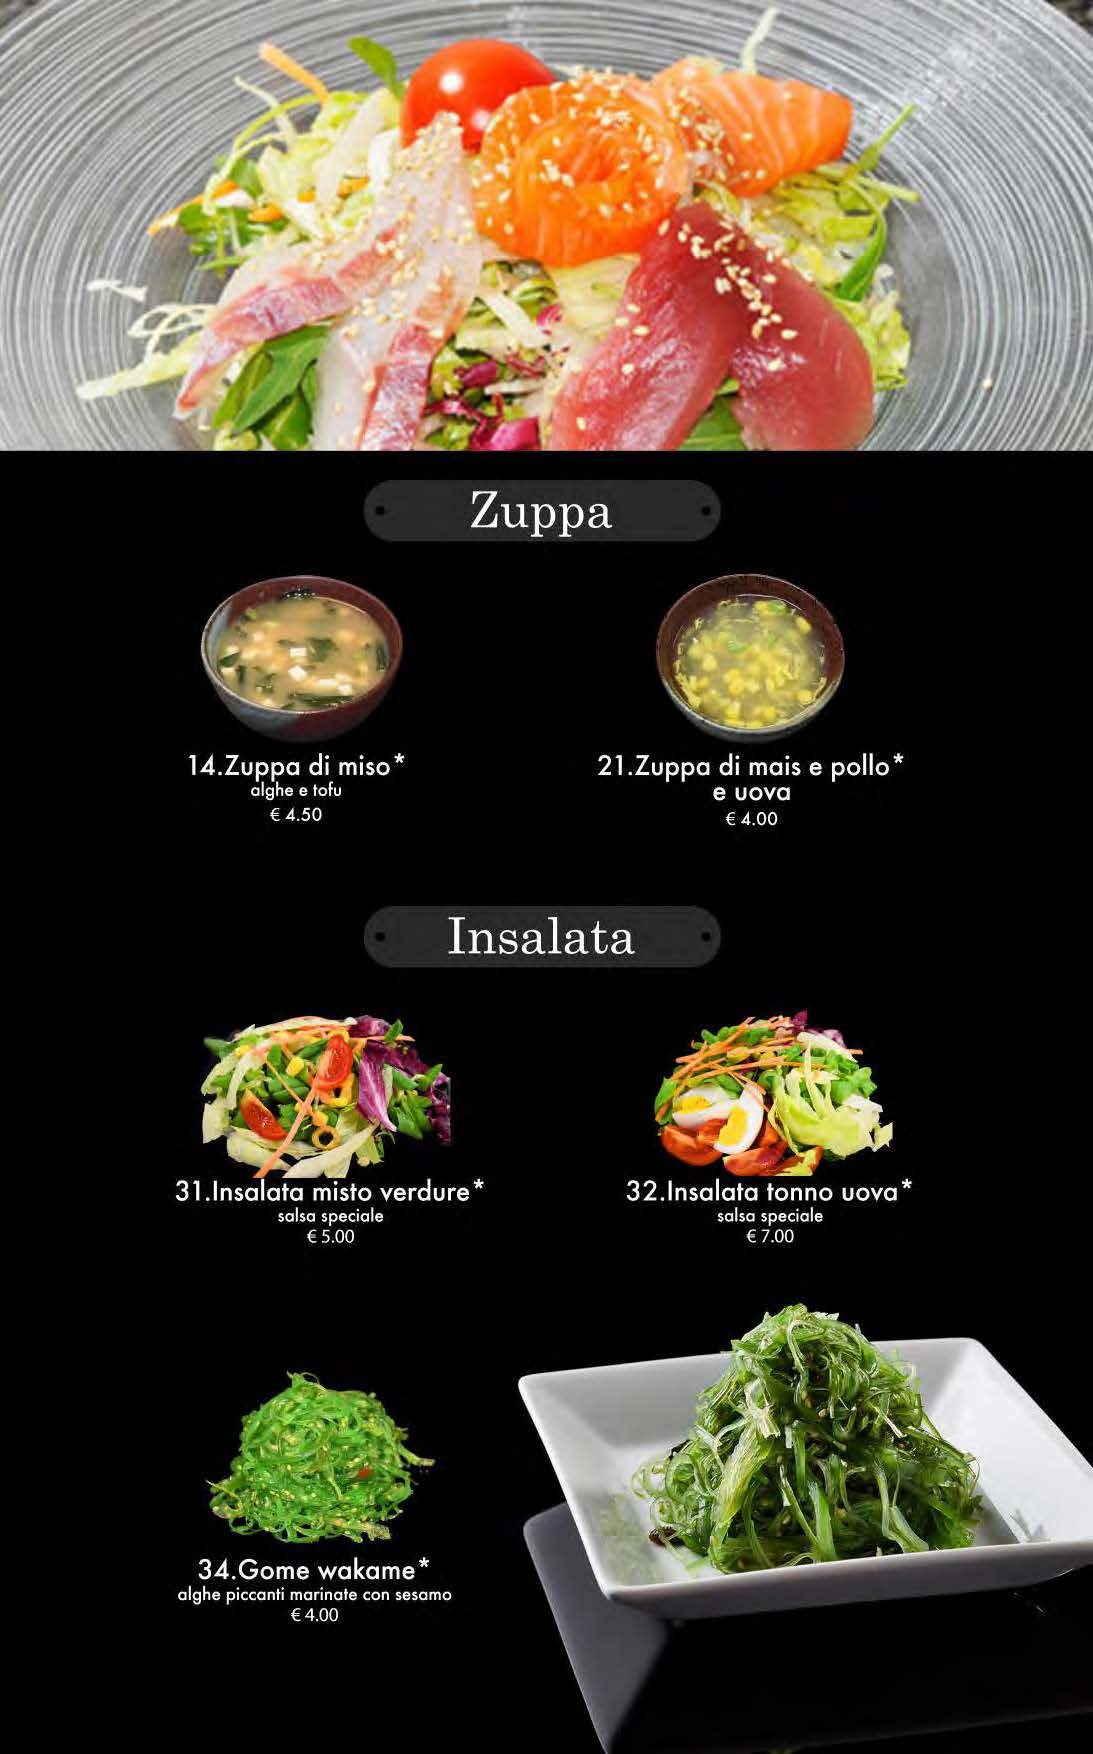 attimi ristorante giapponese padova menù pranzo pagina 03 zuppa insalata